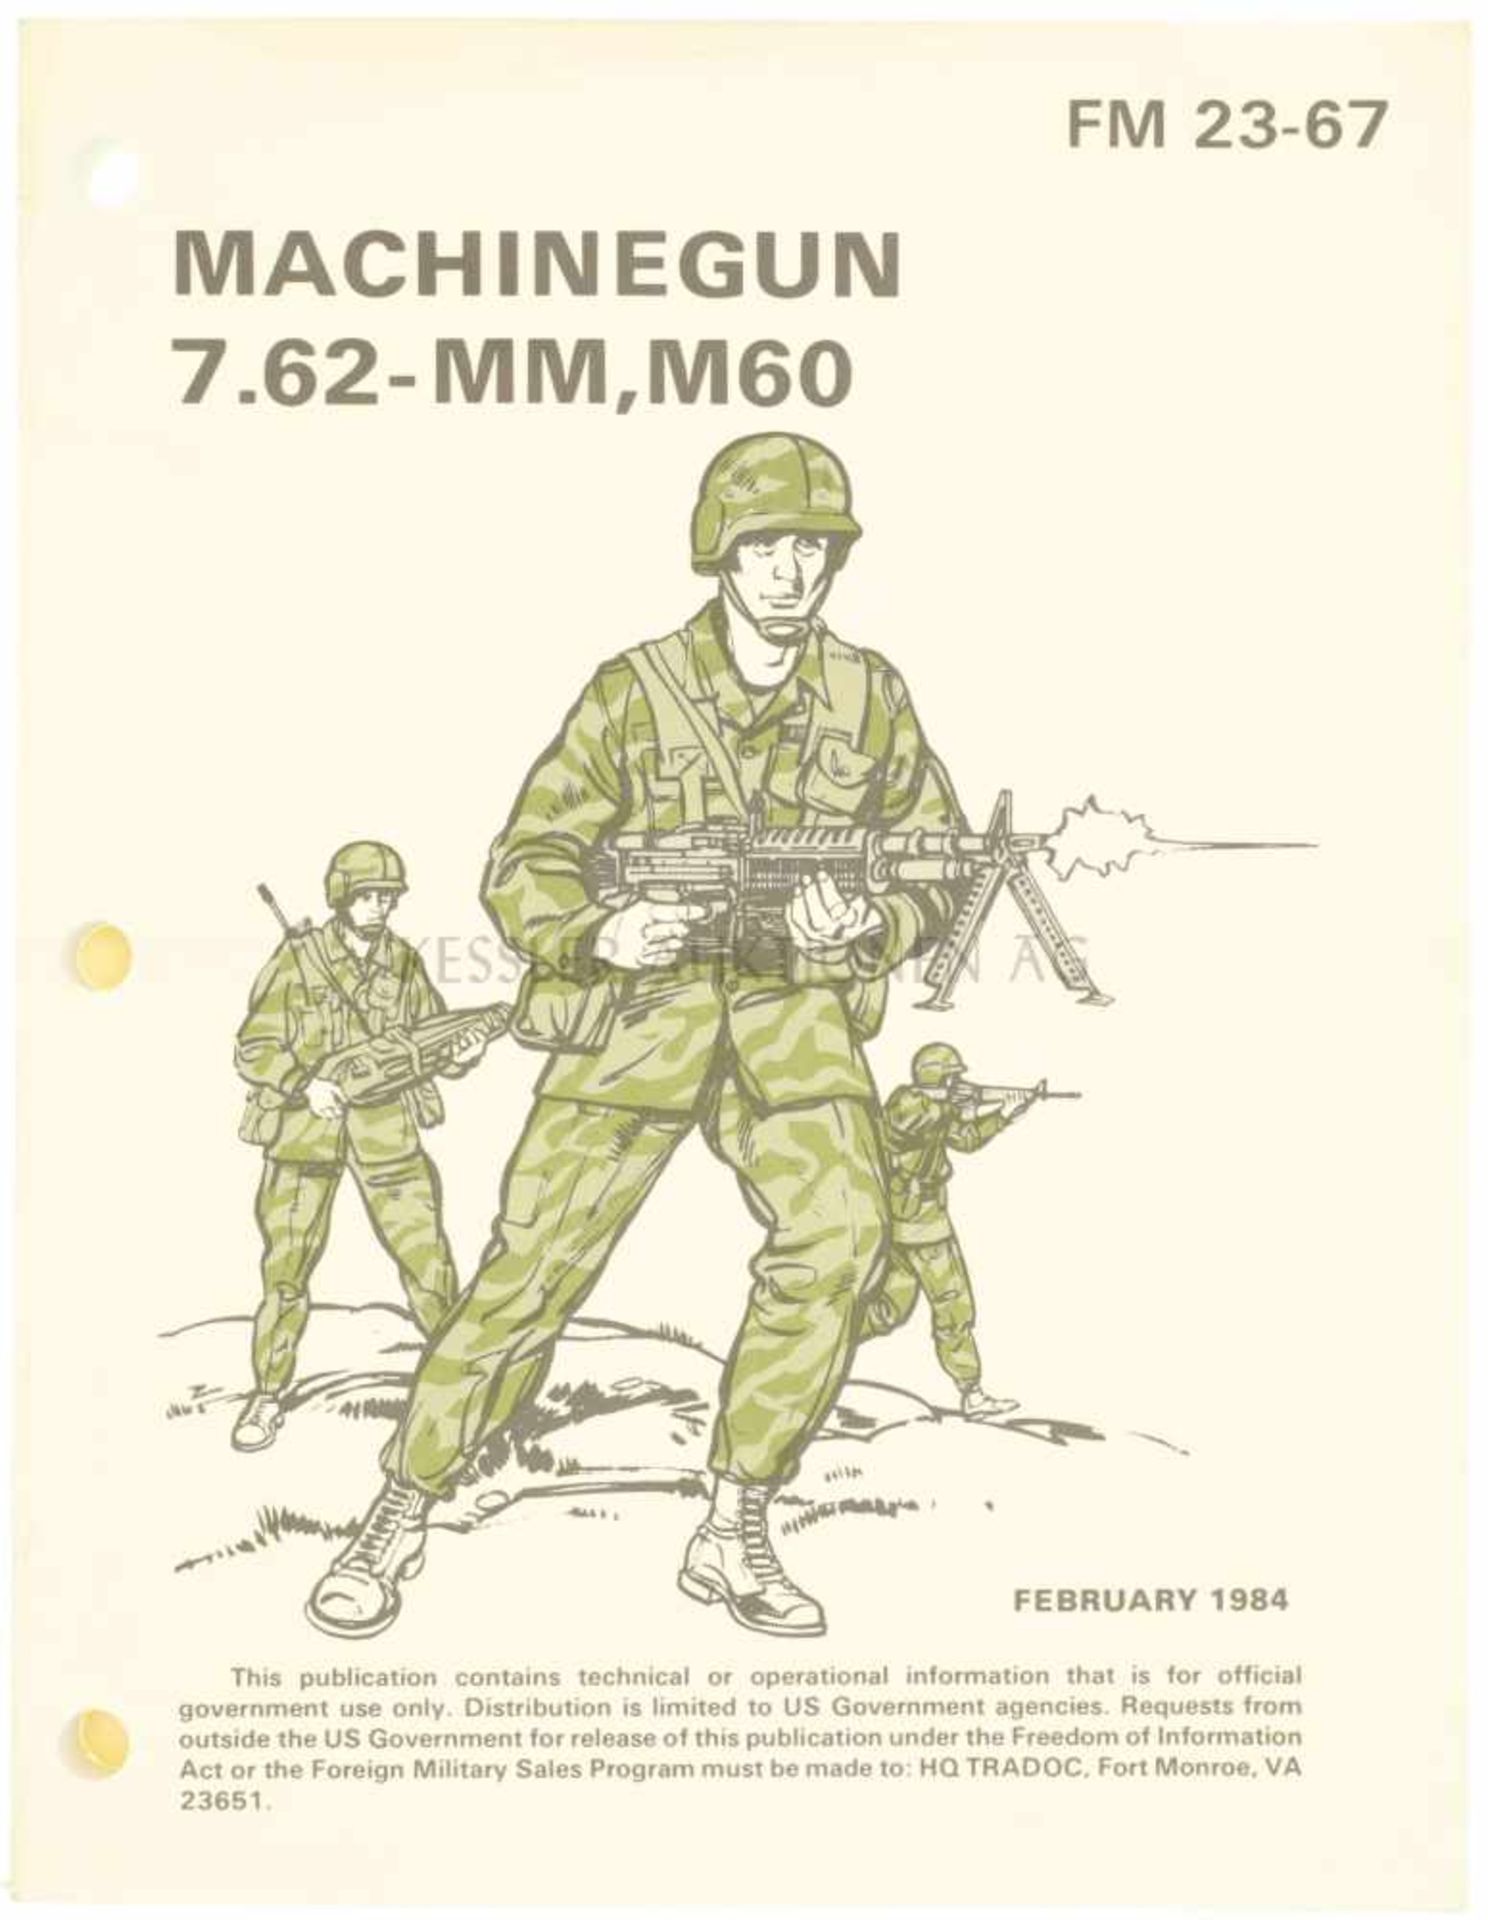 Machinegun 7.62-mm, M60 FM 23-67, Februar 1984, 117 Seiten mit farbigen Illustrationen, in